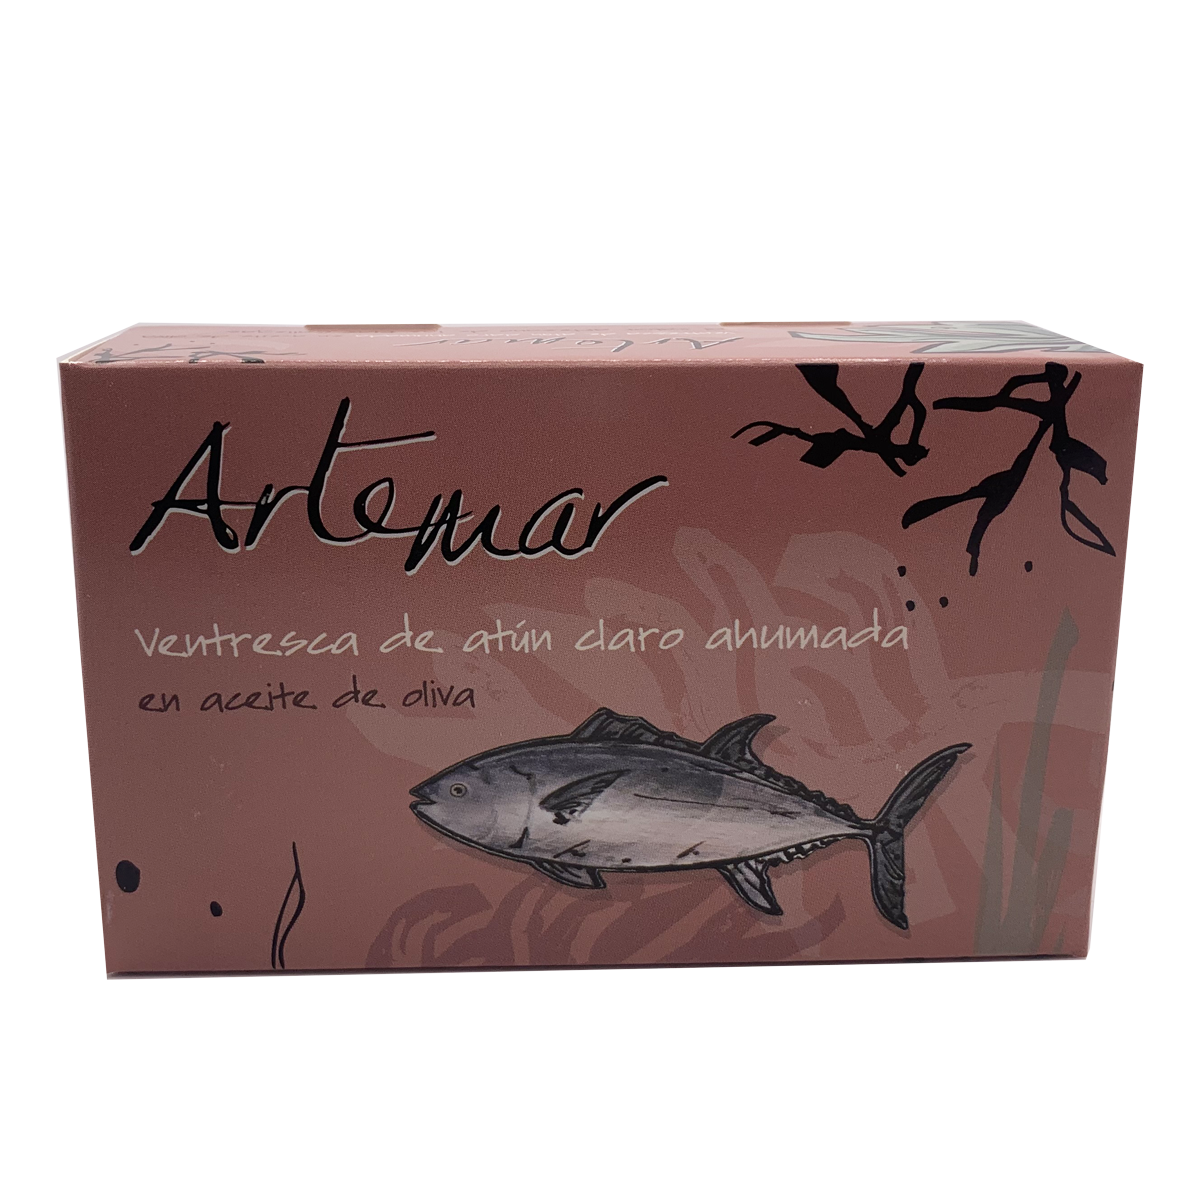 Ventresca de atún ahumada, Artemar 115gr